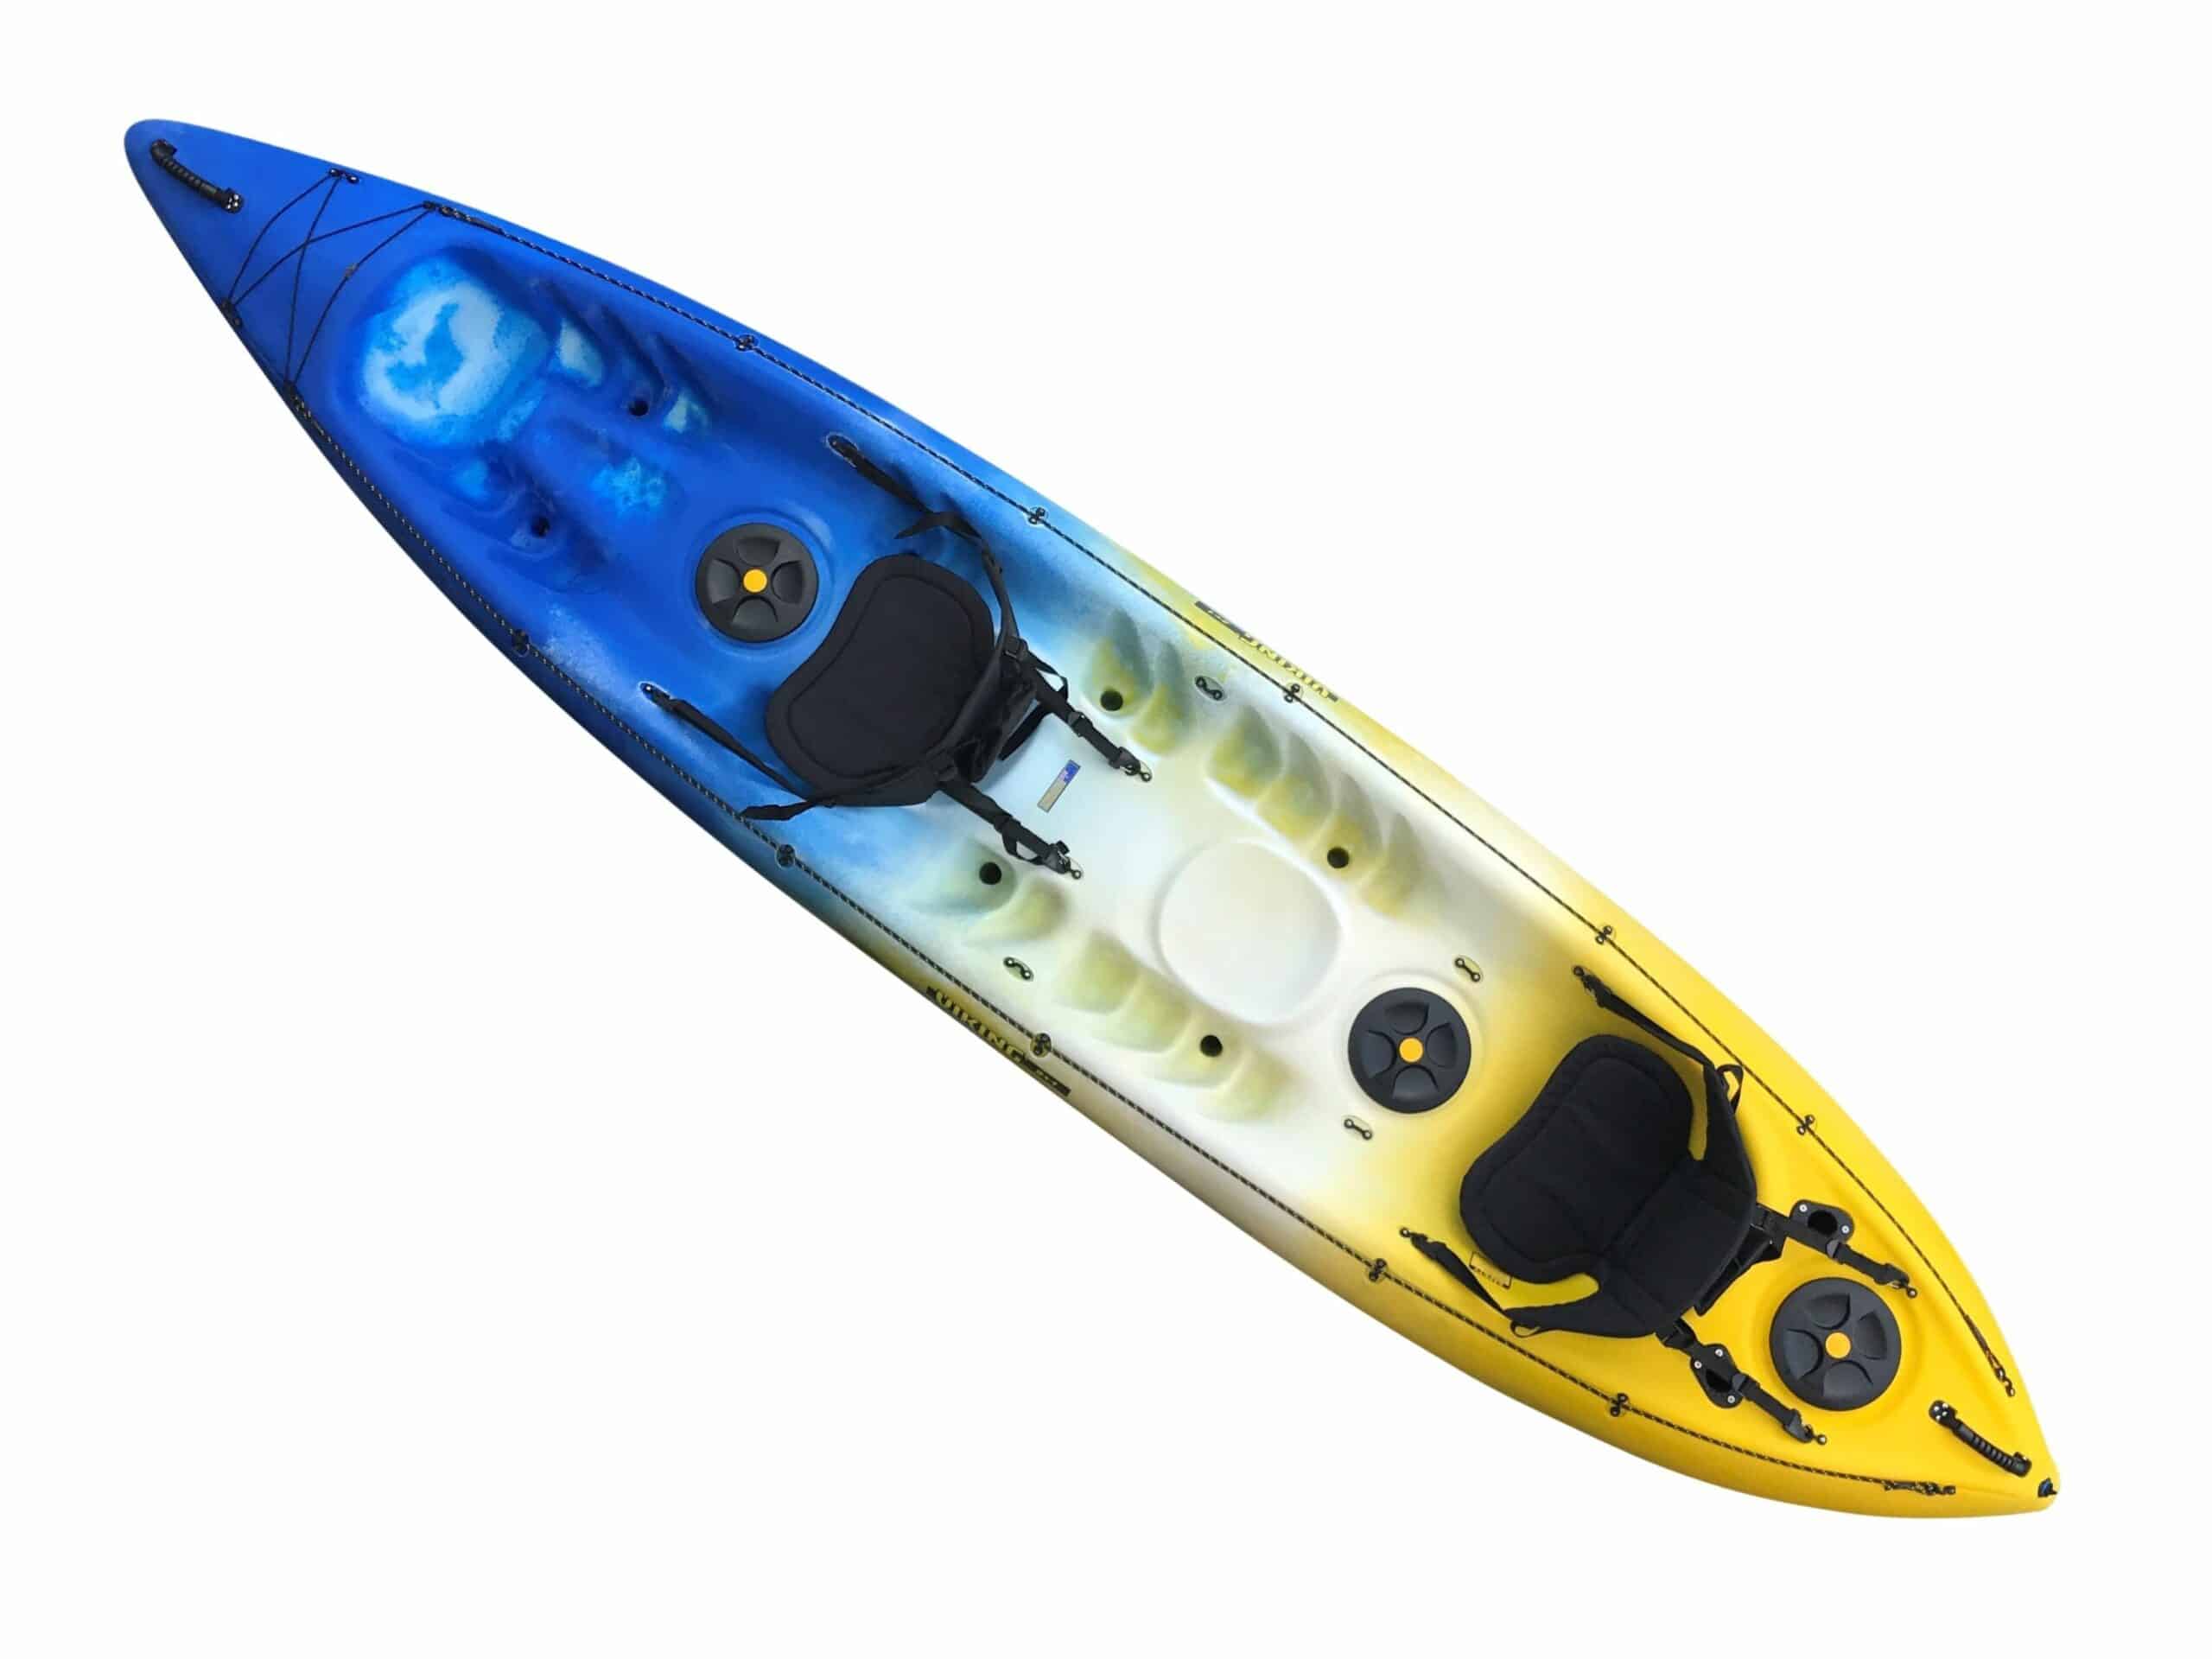 Viking Kayak 2+1 Bixpy™ J2 Outboard Motor & Power Kit Package